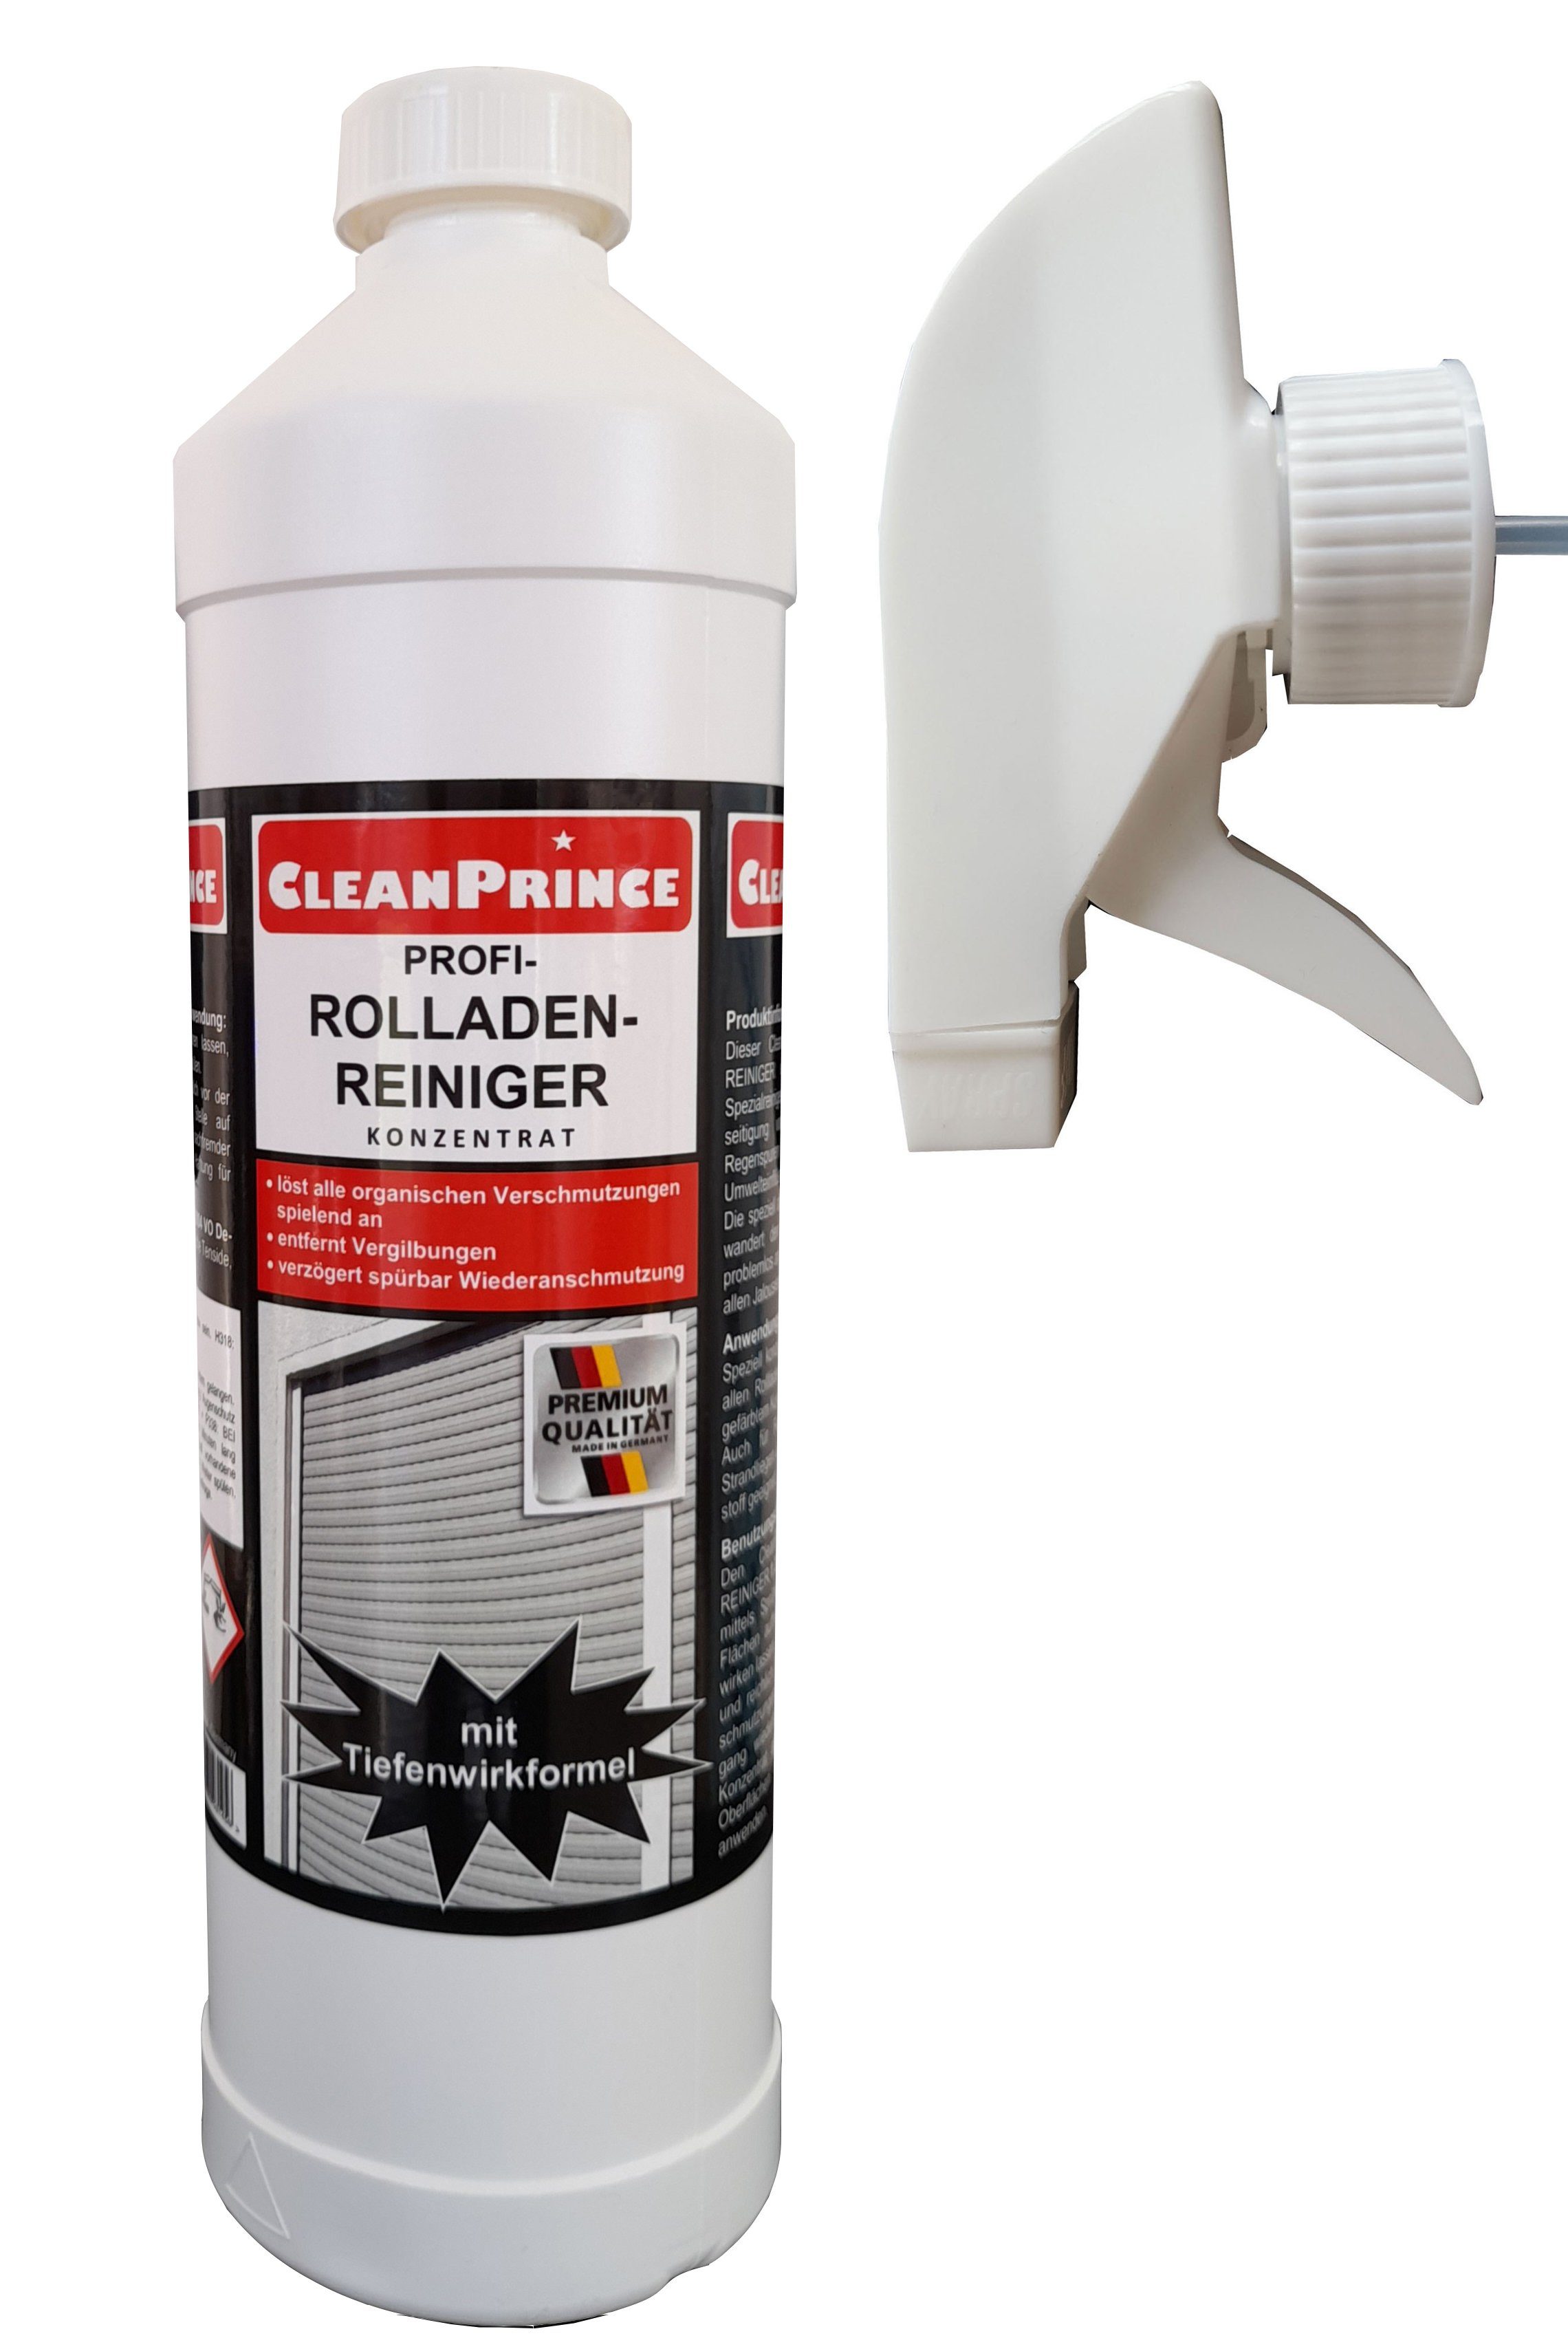 CleanPrince Rolladenreiniger Konzentrat Reinigungskonzentrat (auch für Lamellen, Fensterrahmen, Gartenmöbel)